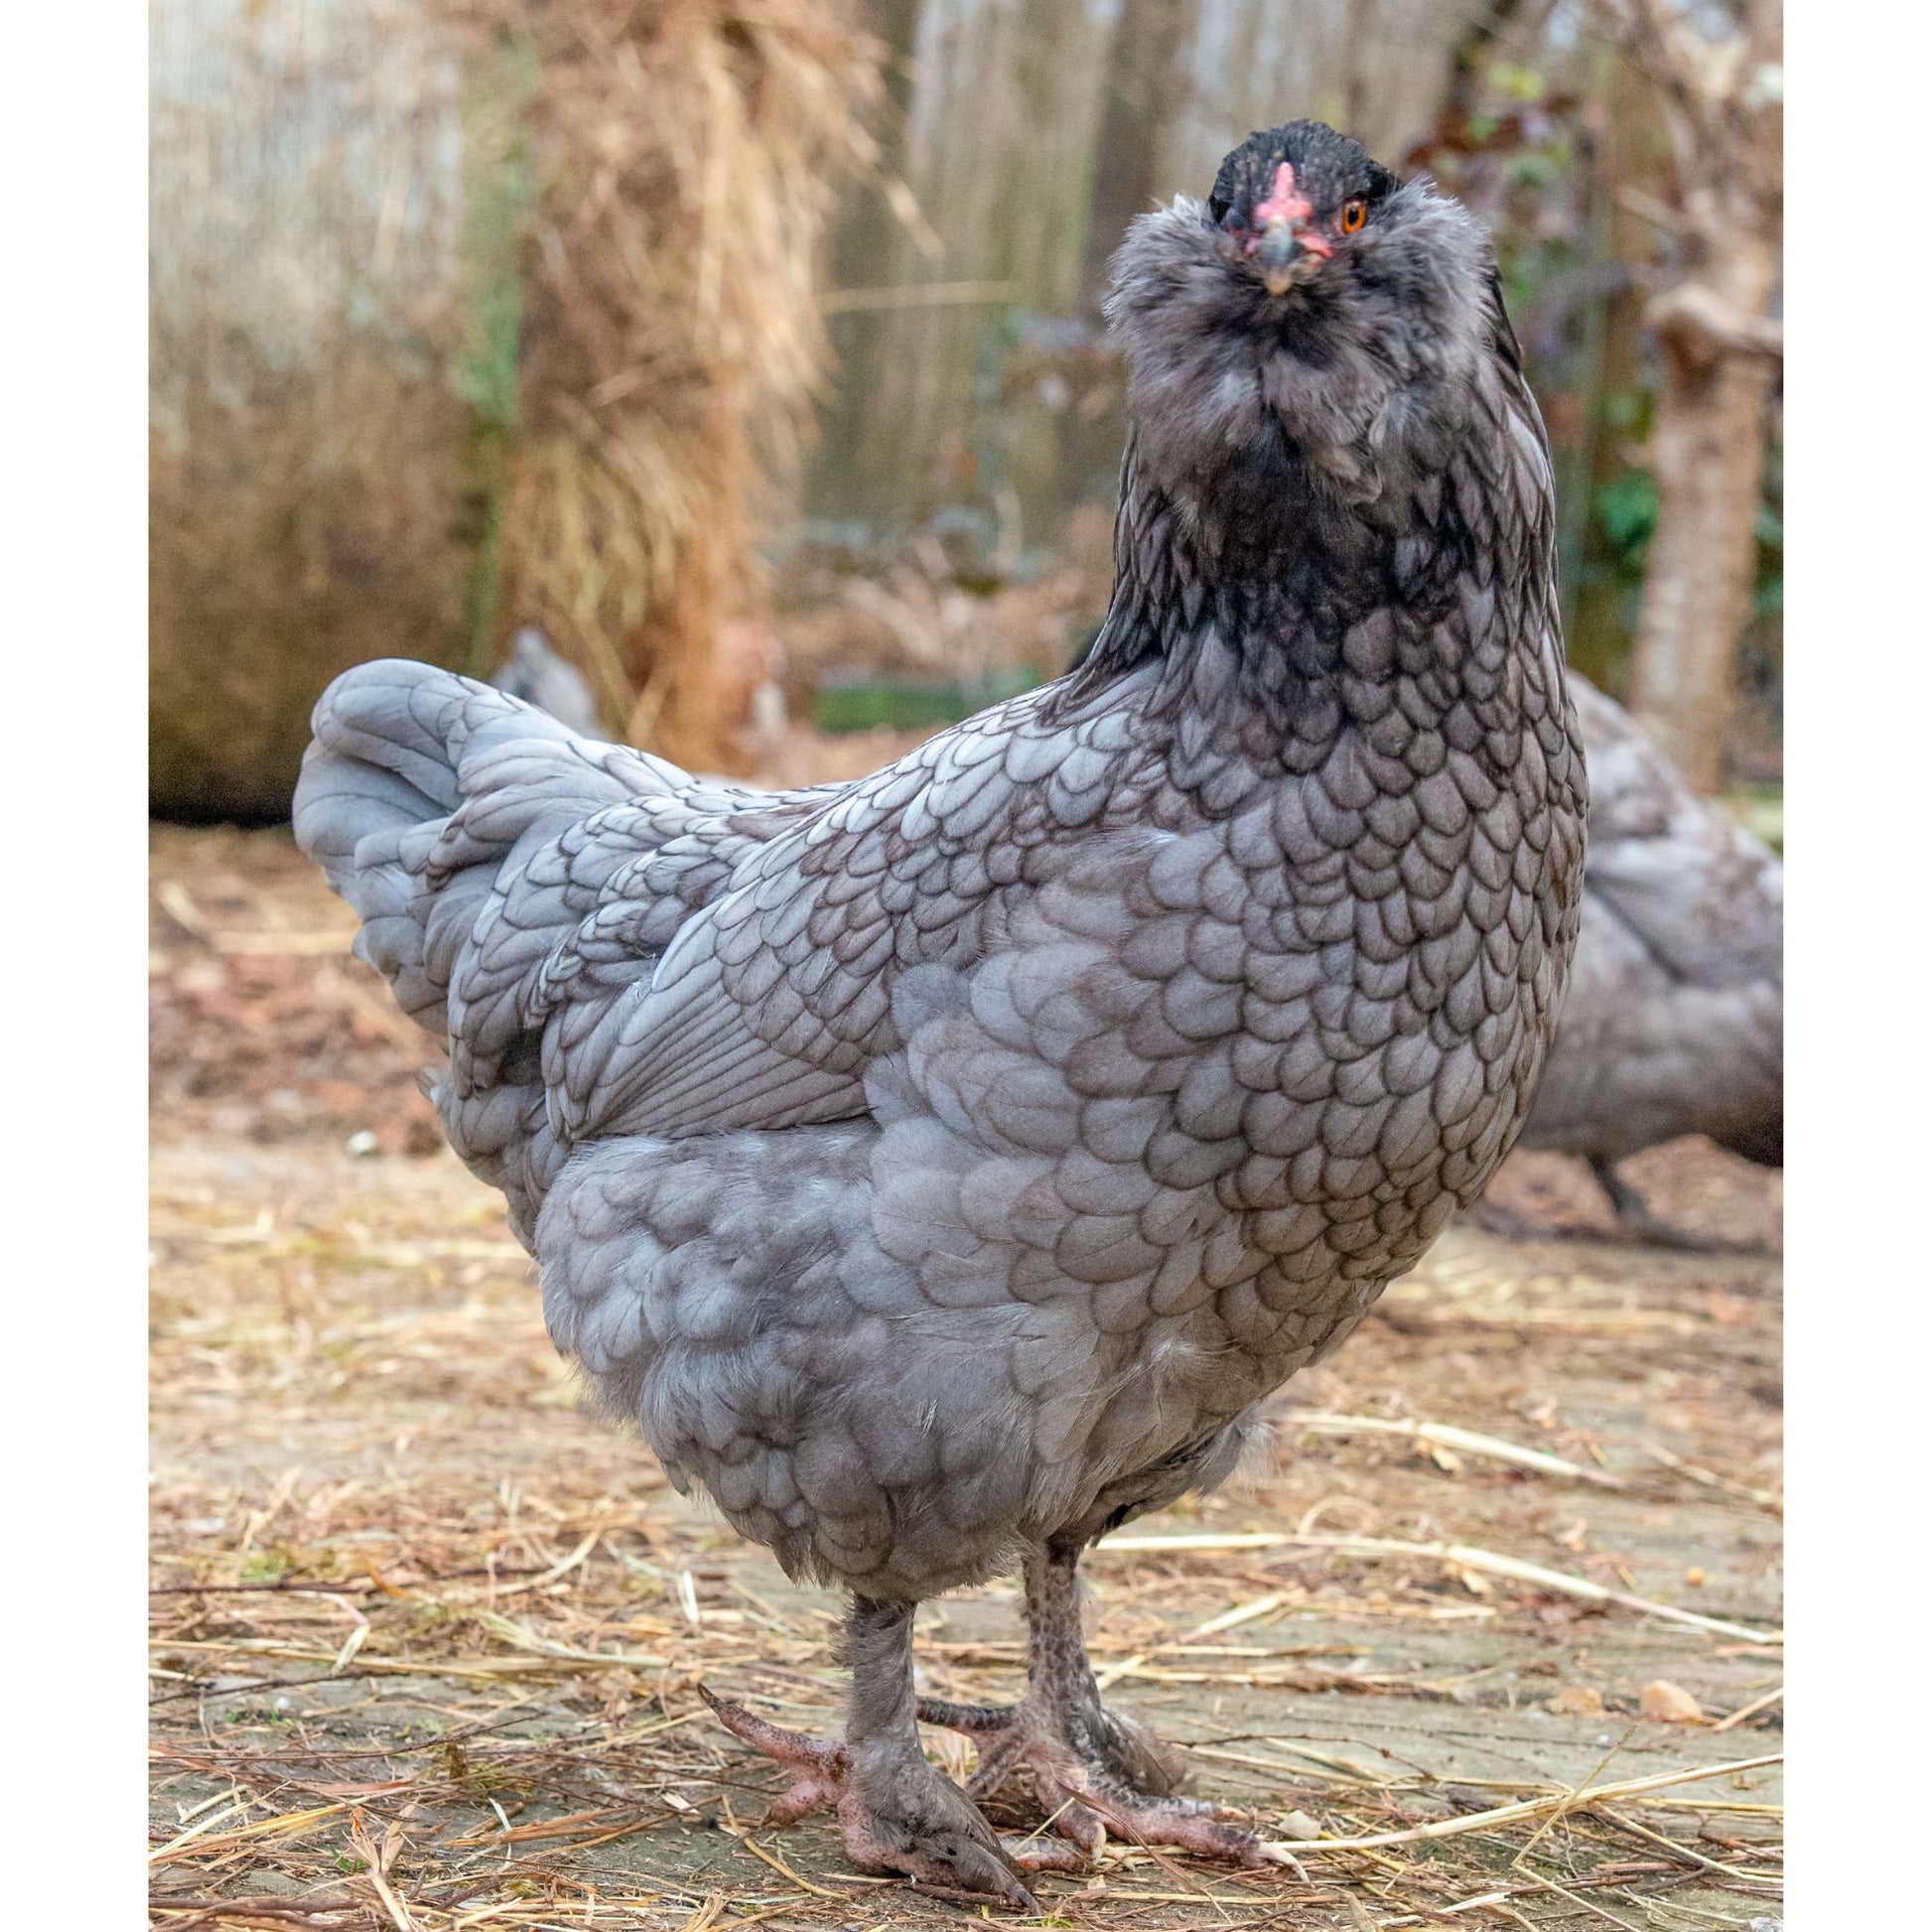 Blue Favaucana chicken breed